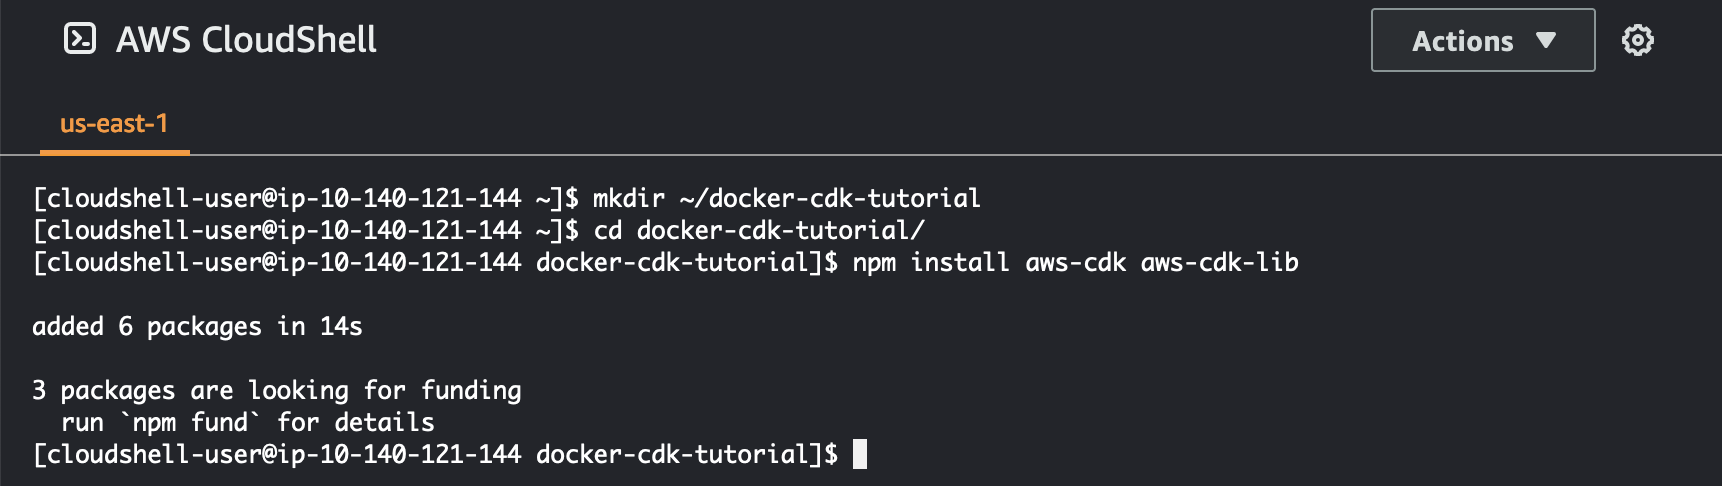 Immagine del comando usato per installare le AWS CDK dipendenze.